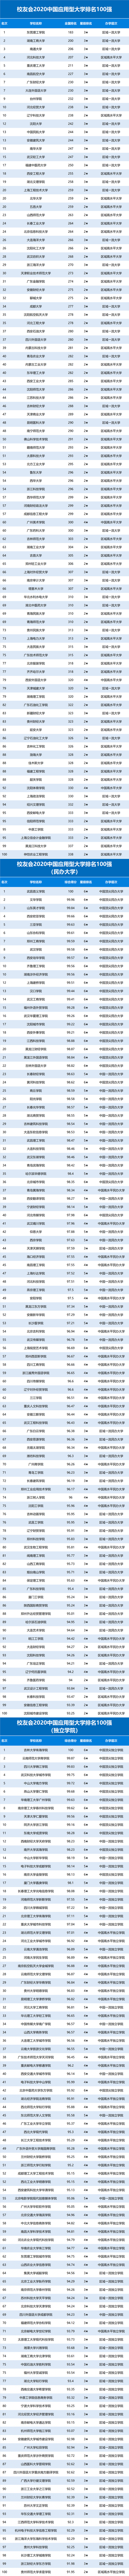 2020中国应用型大学排名300强发布 东莞理工学院蝉联第1 台州学院跻身前